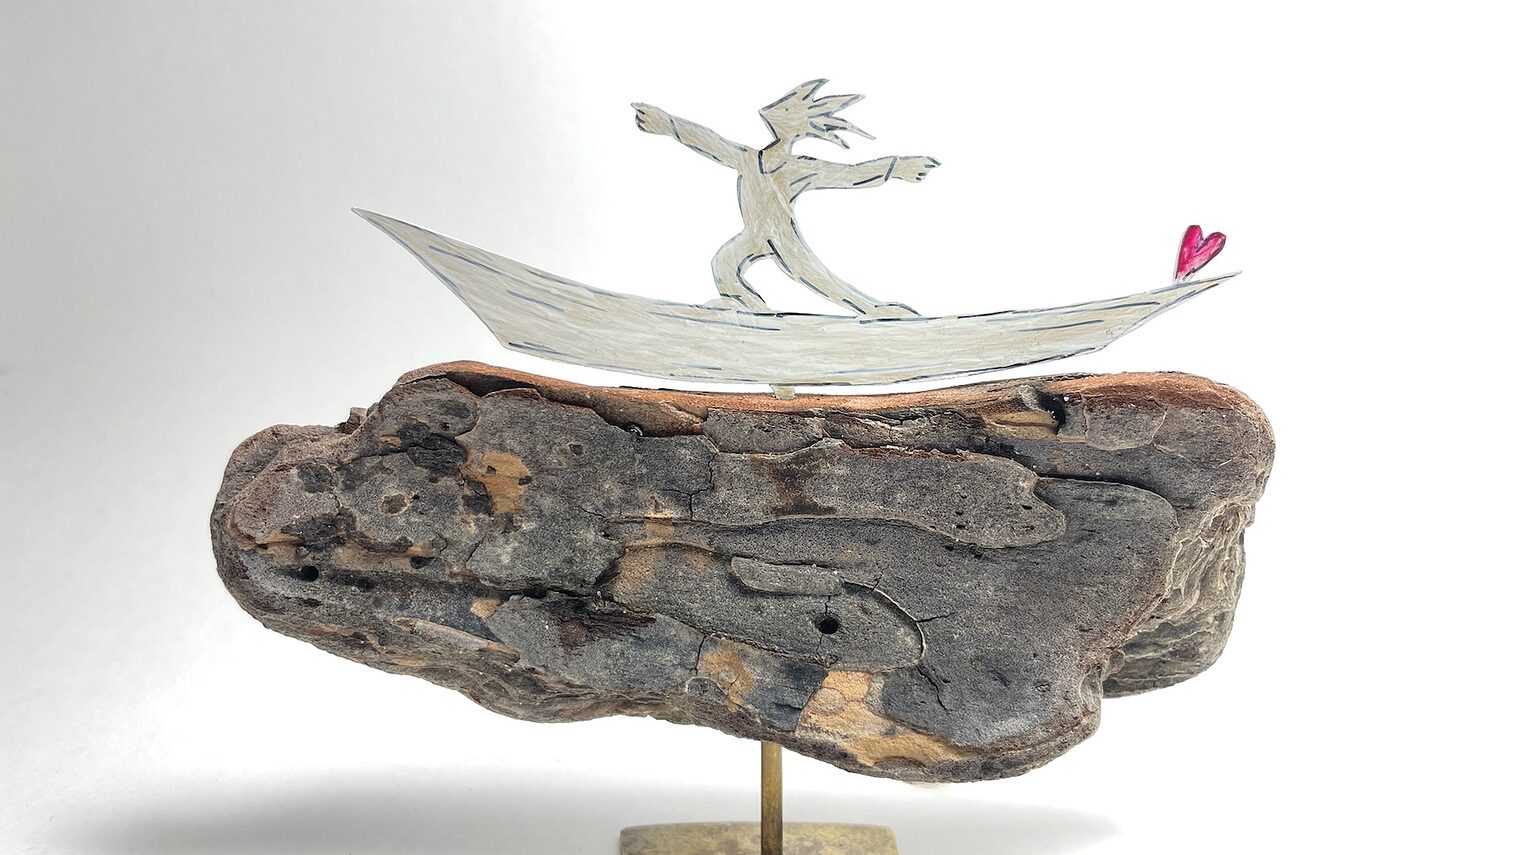 Objekt „Surfer“ von Meike Kröger, gefertigt aus Messing und Treibholz mit einer Zeichnung.